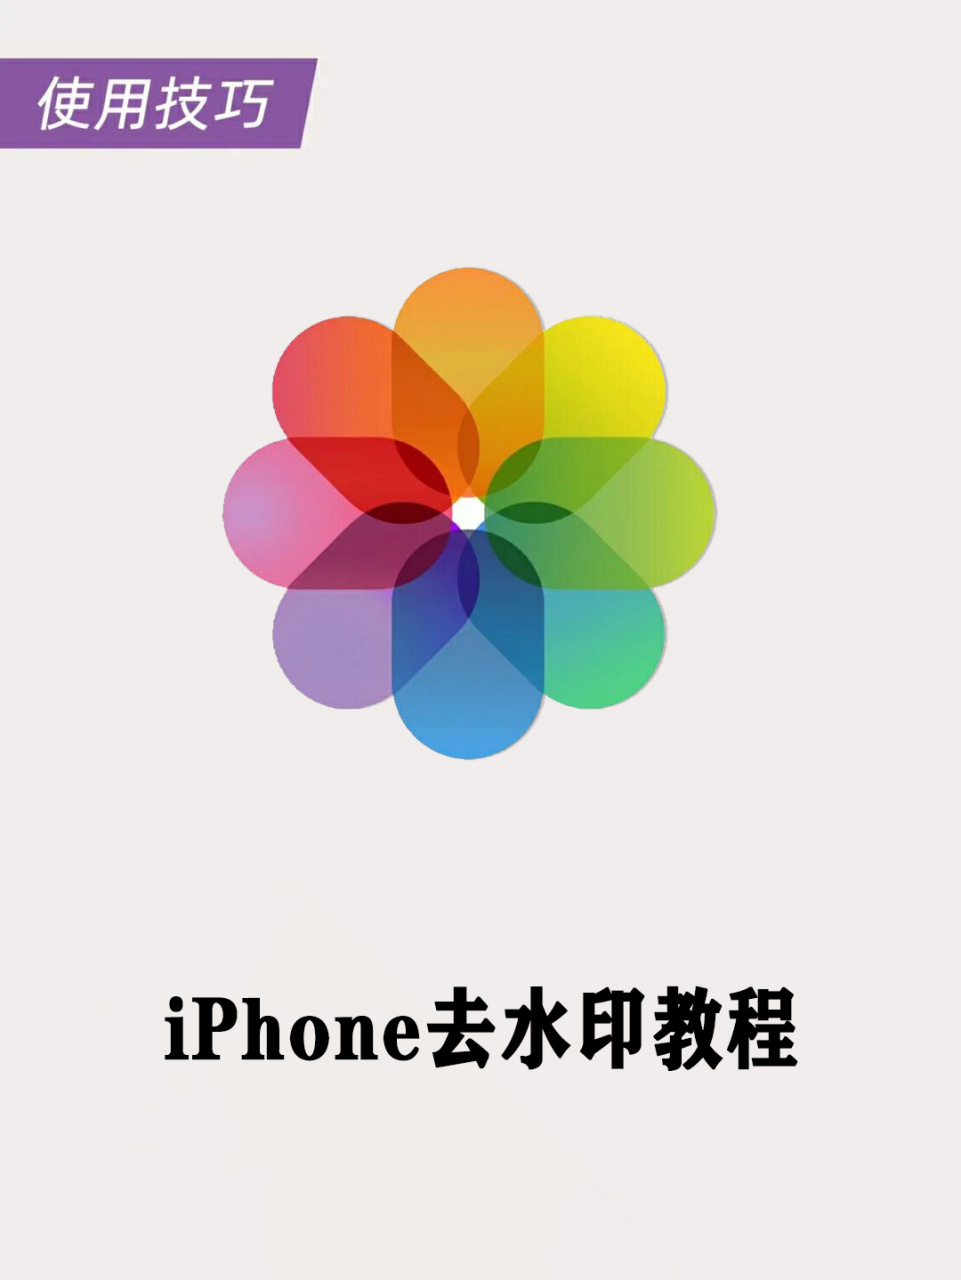 苹果相册logo图片图片